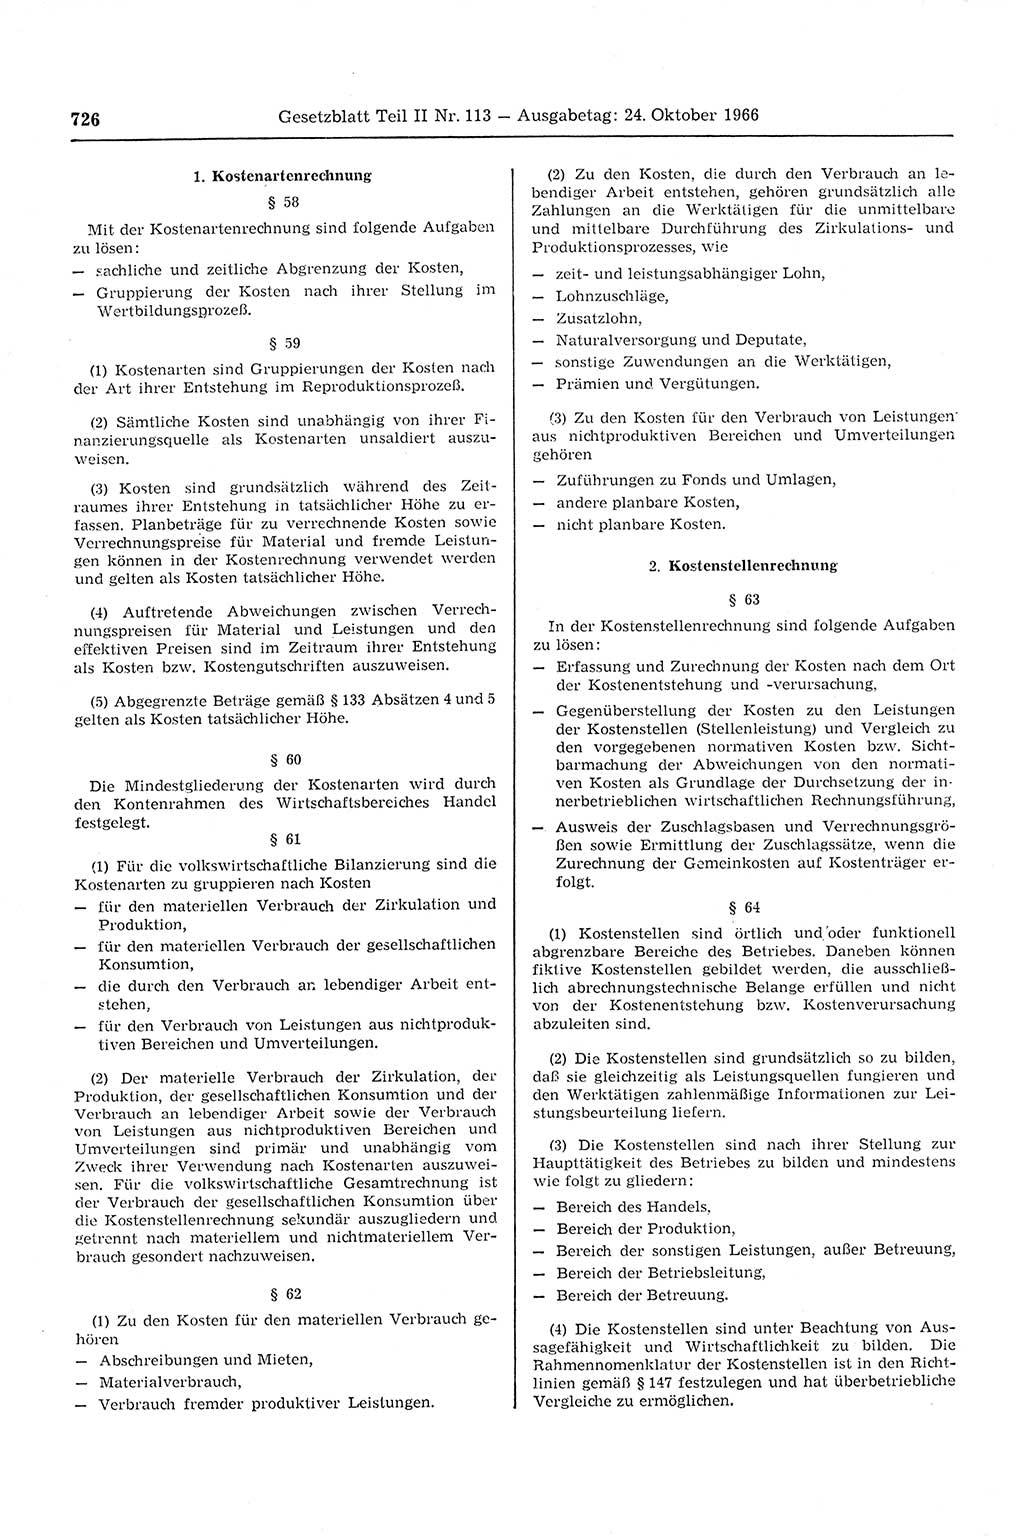 Gesetzblatt (GBl.) der Deutschen Demokratischen Republik (DDR) Teil ⅠⅠ 1966, Seite 726 (GBl. DDR ⅠⅠ 1966, S. 726)